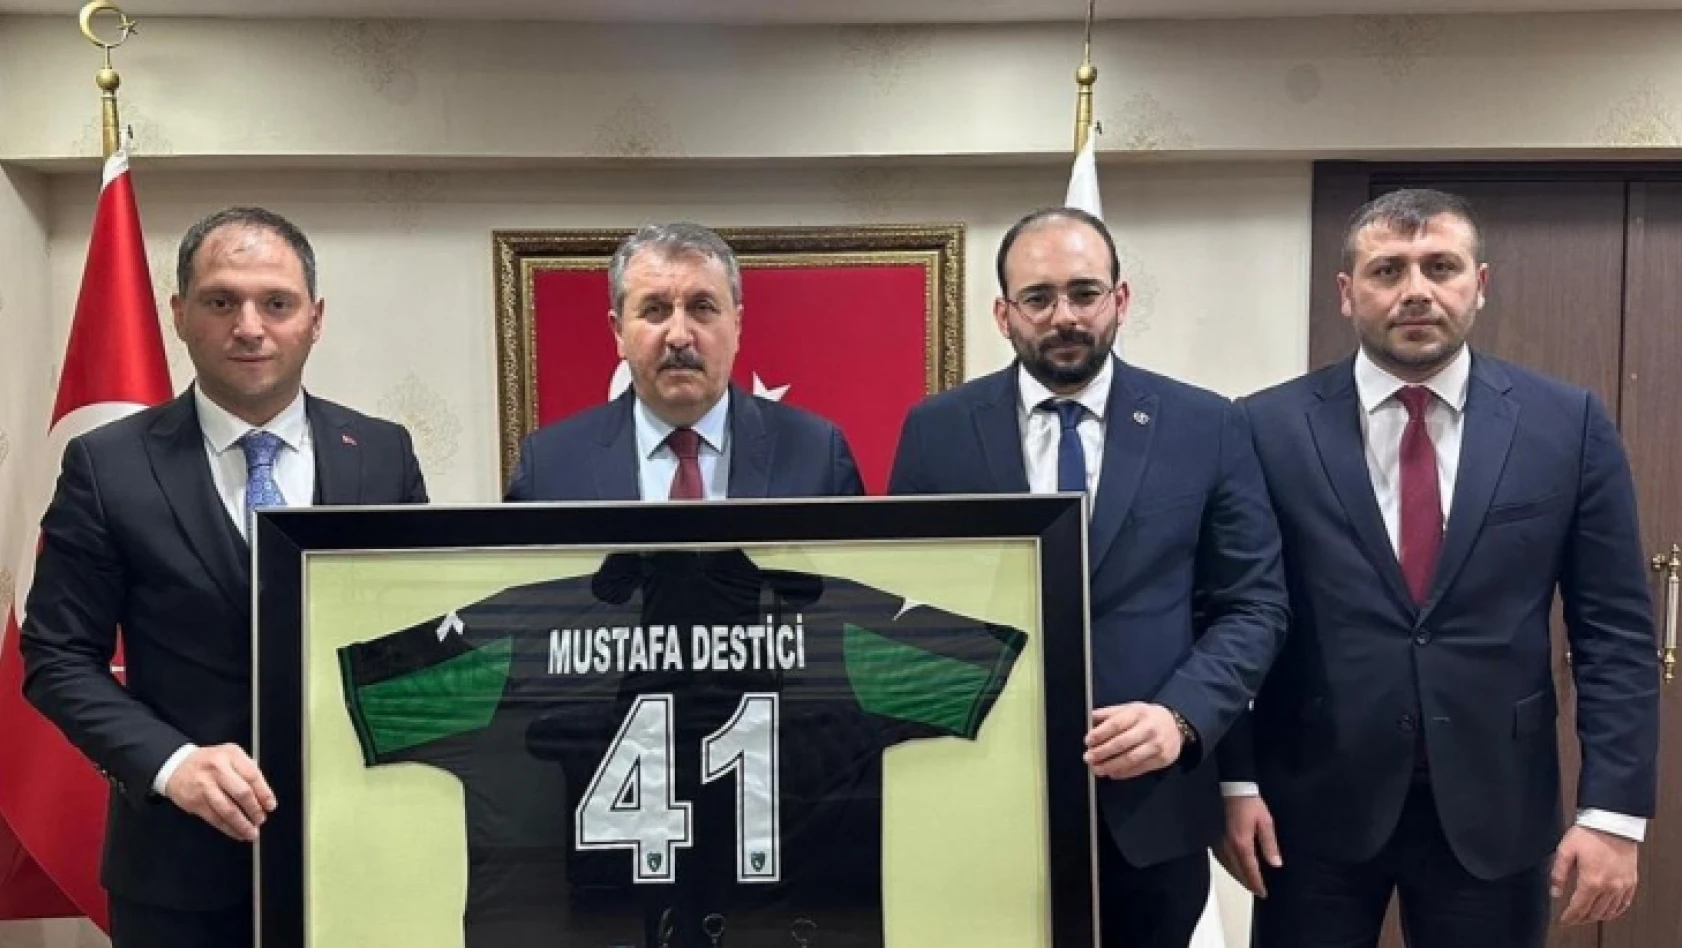 Kocaelispor formasını Mustafa Destici'ye götürdüler